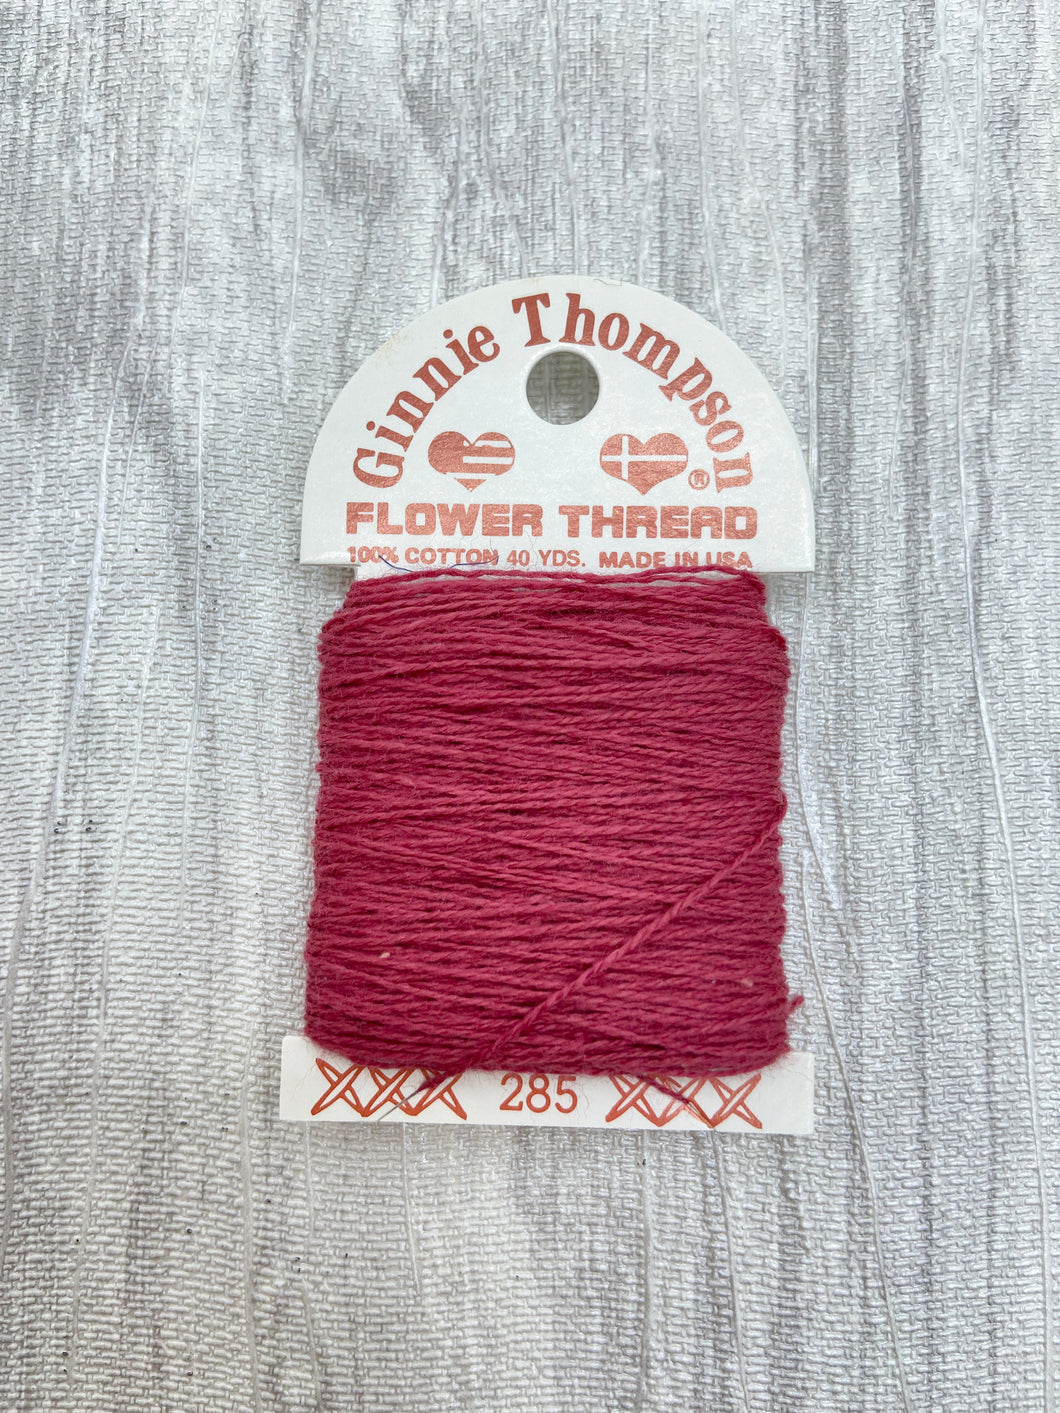 Cranberry (285) Ginnie Thompson Flower Thread